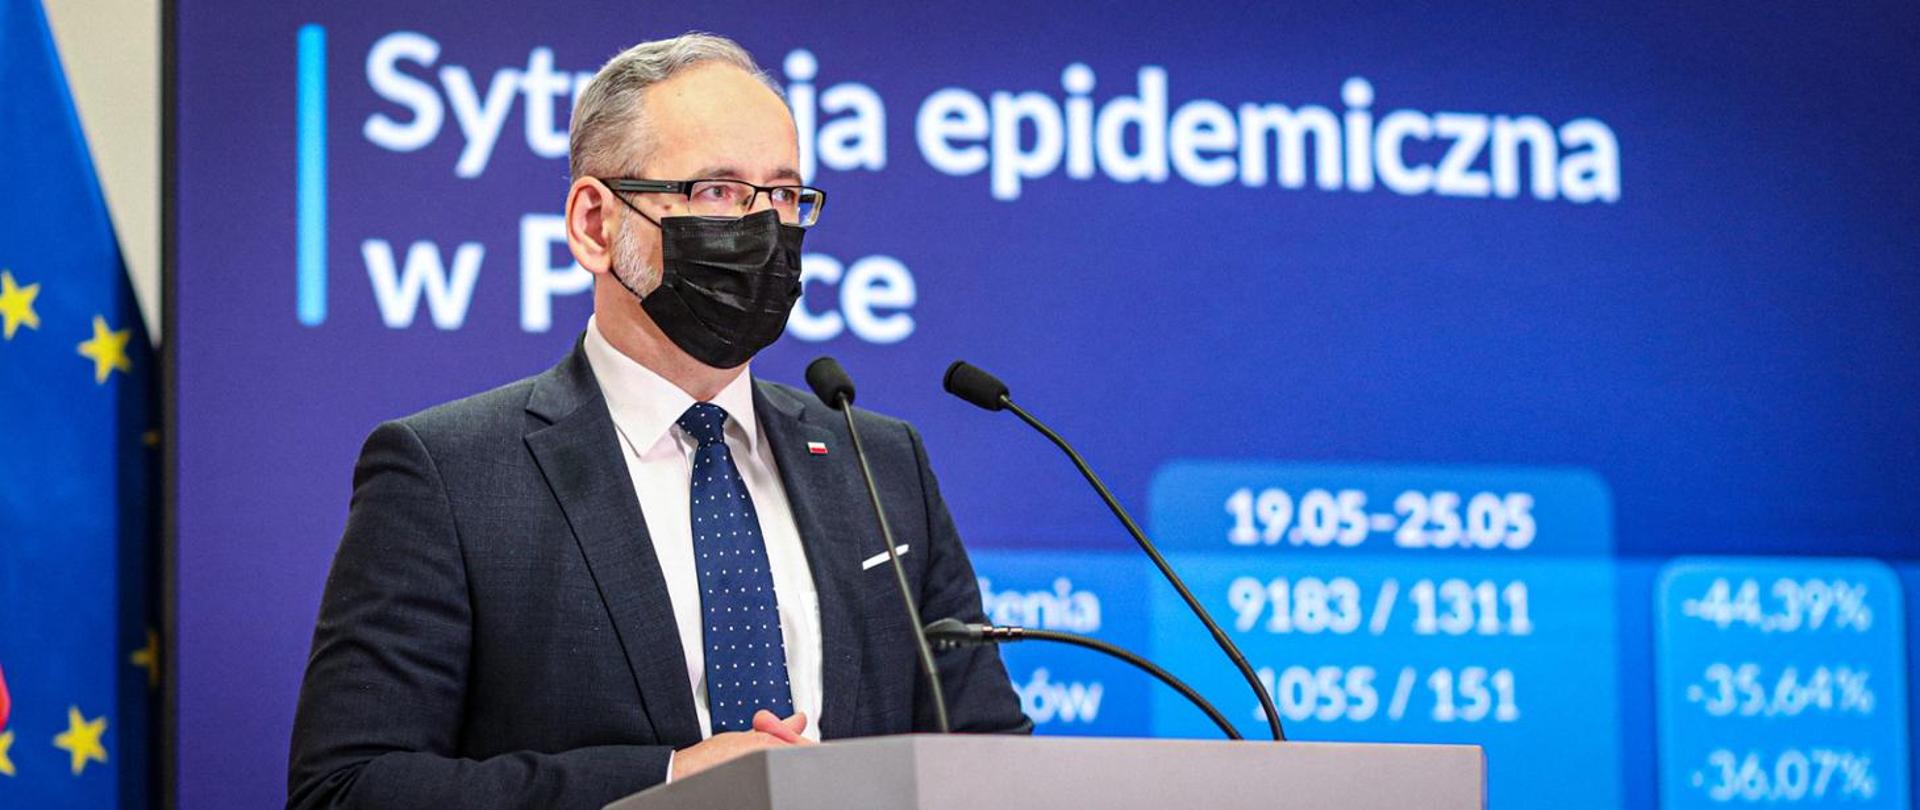 Zmiana zasad bezpieczeństwa od 6 do 25 czerwca - zdjęcie przedstawia ministra zdrowia Adama Niedzielskiego w trakcie przemówienia